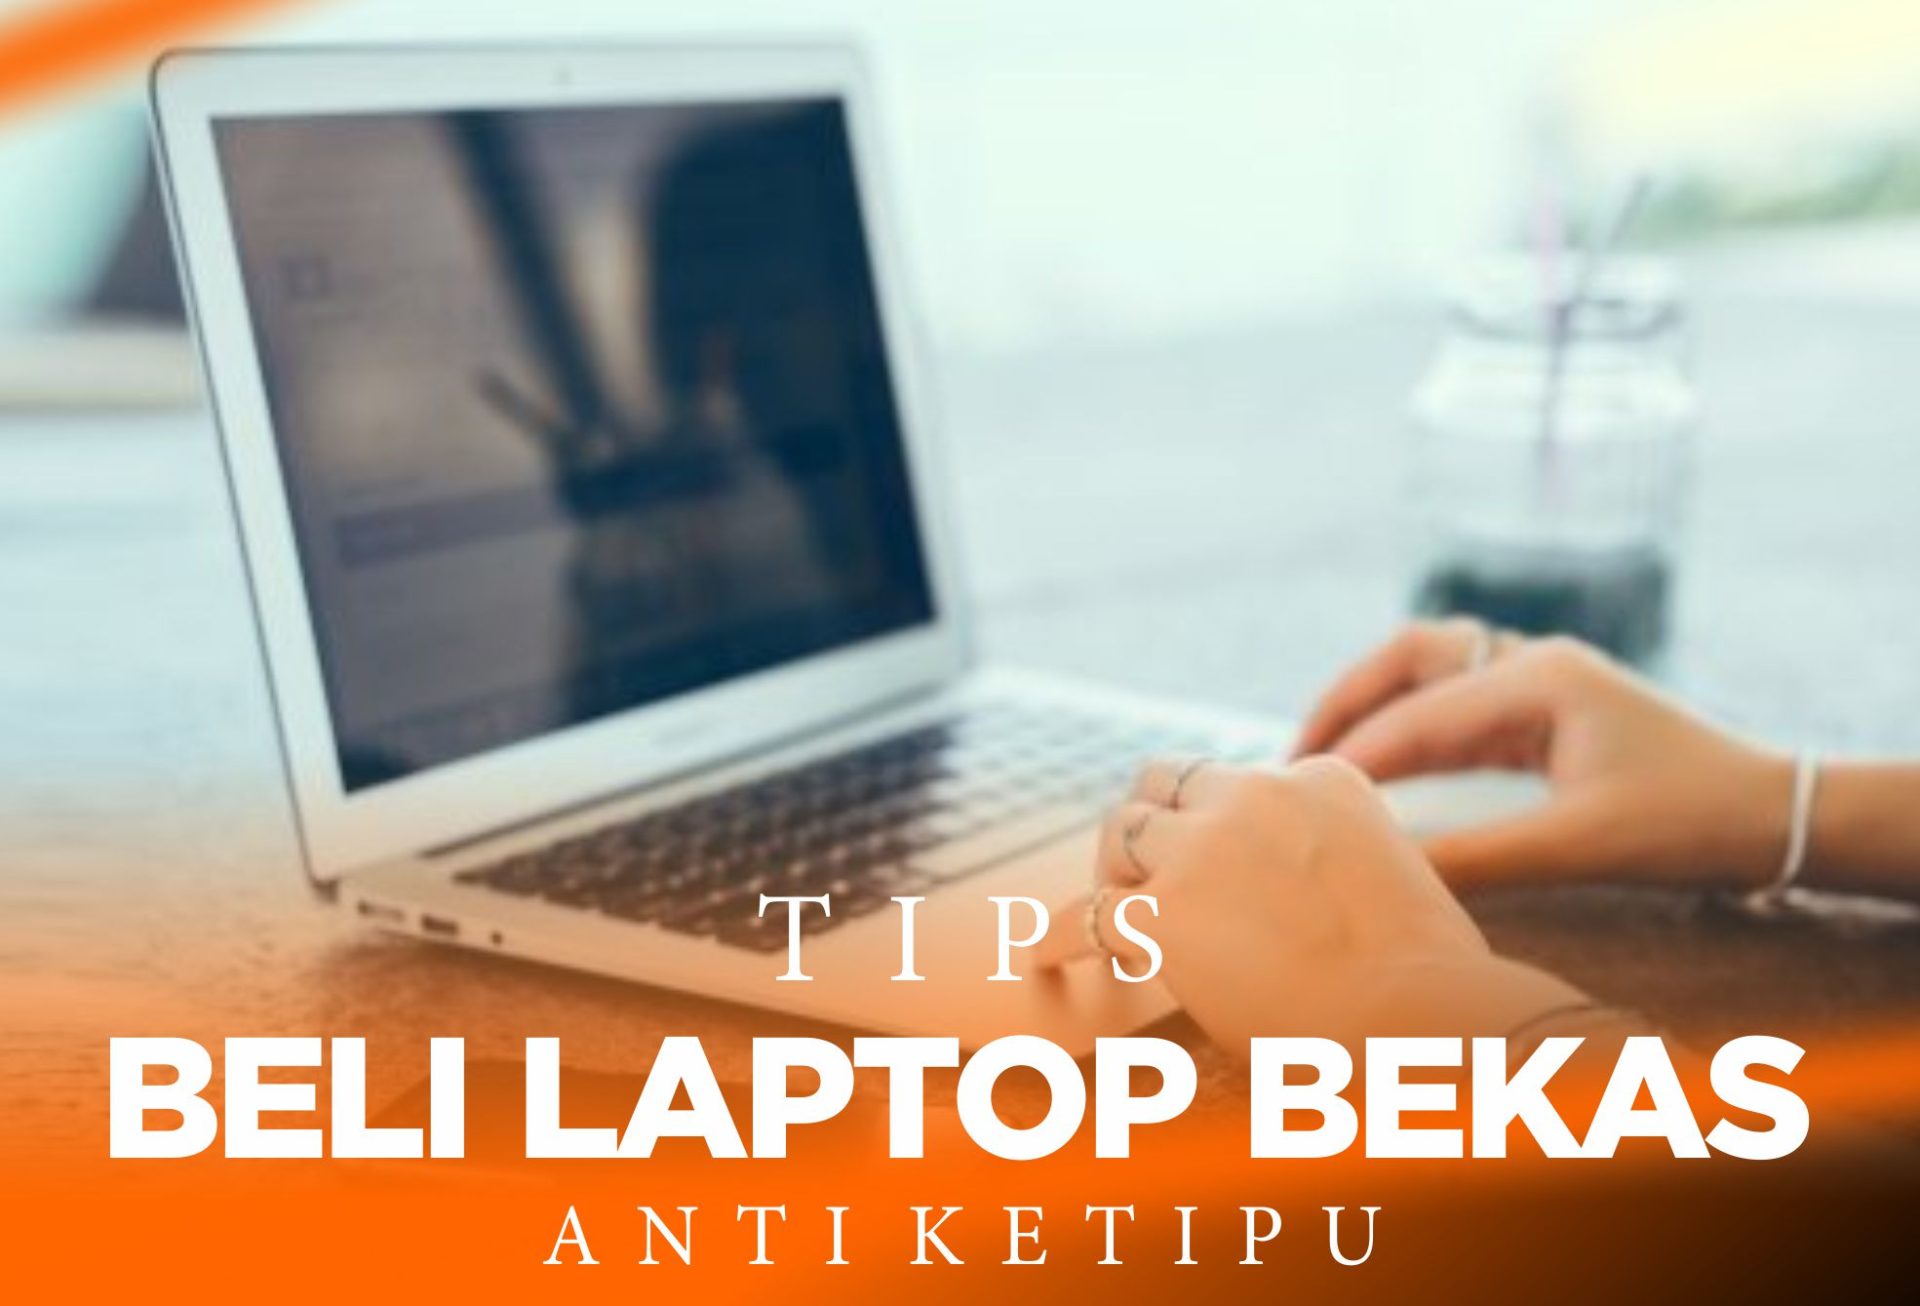 Tips beli laptop bekas